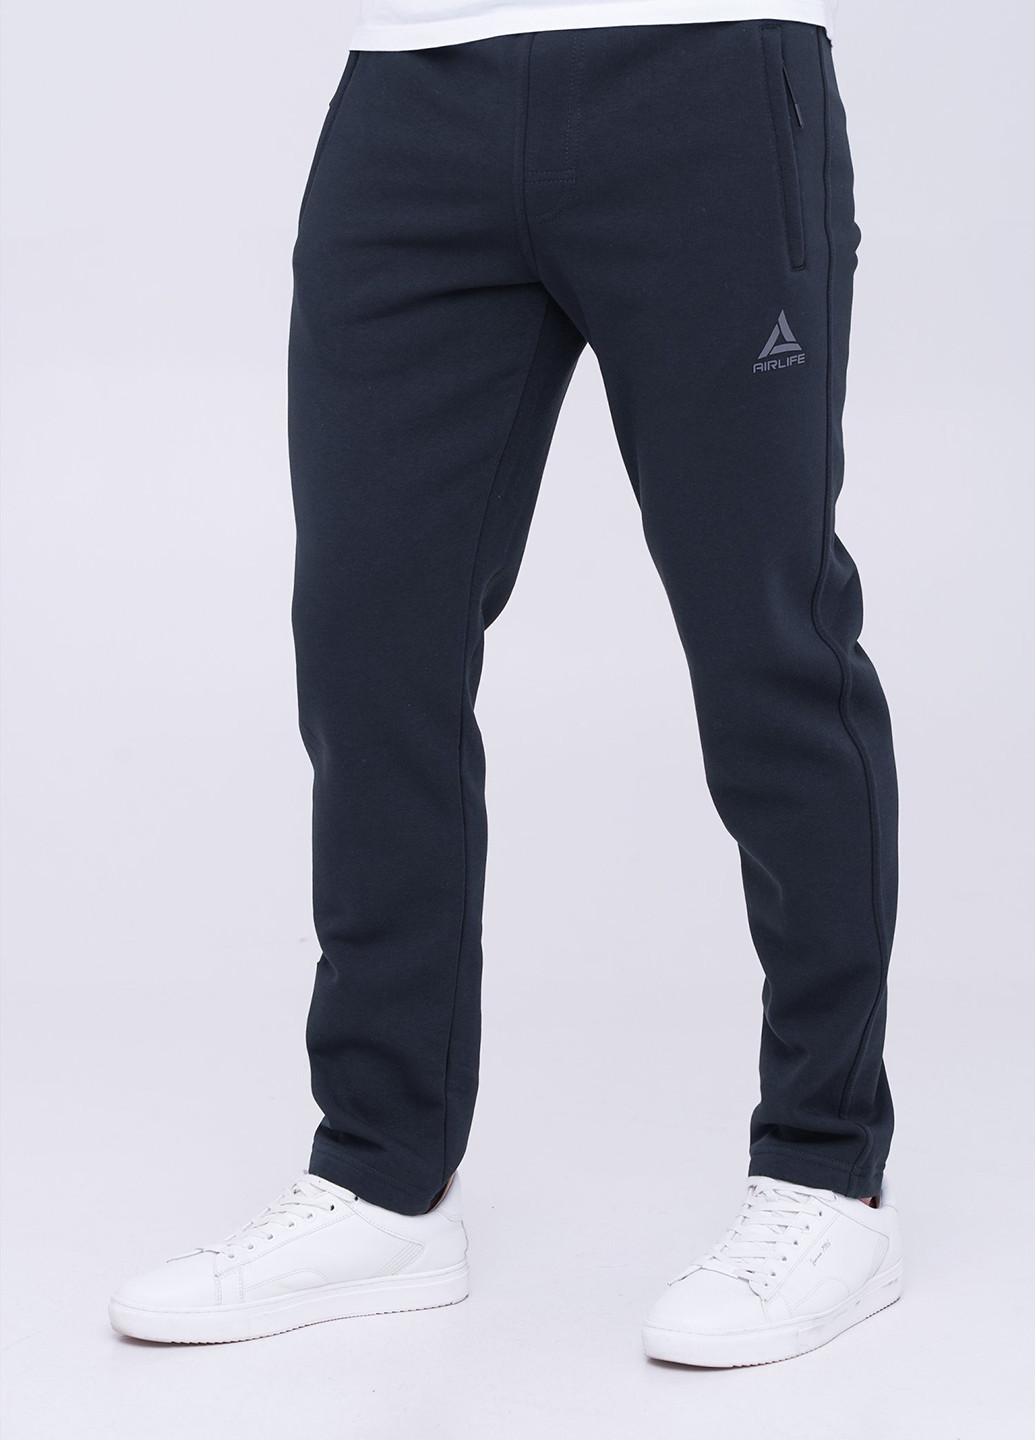 Темно-синие спортивные демисезонные зауженные брюки Trend Collection